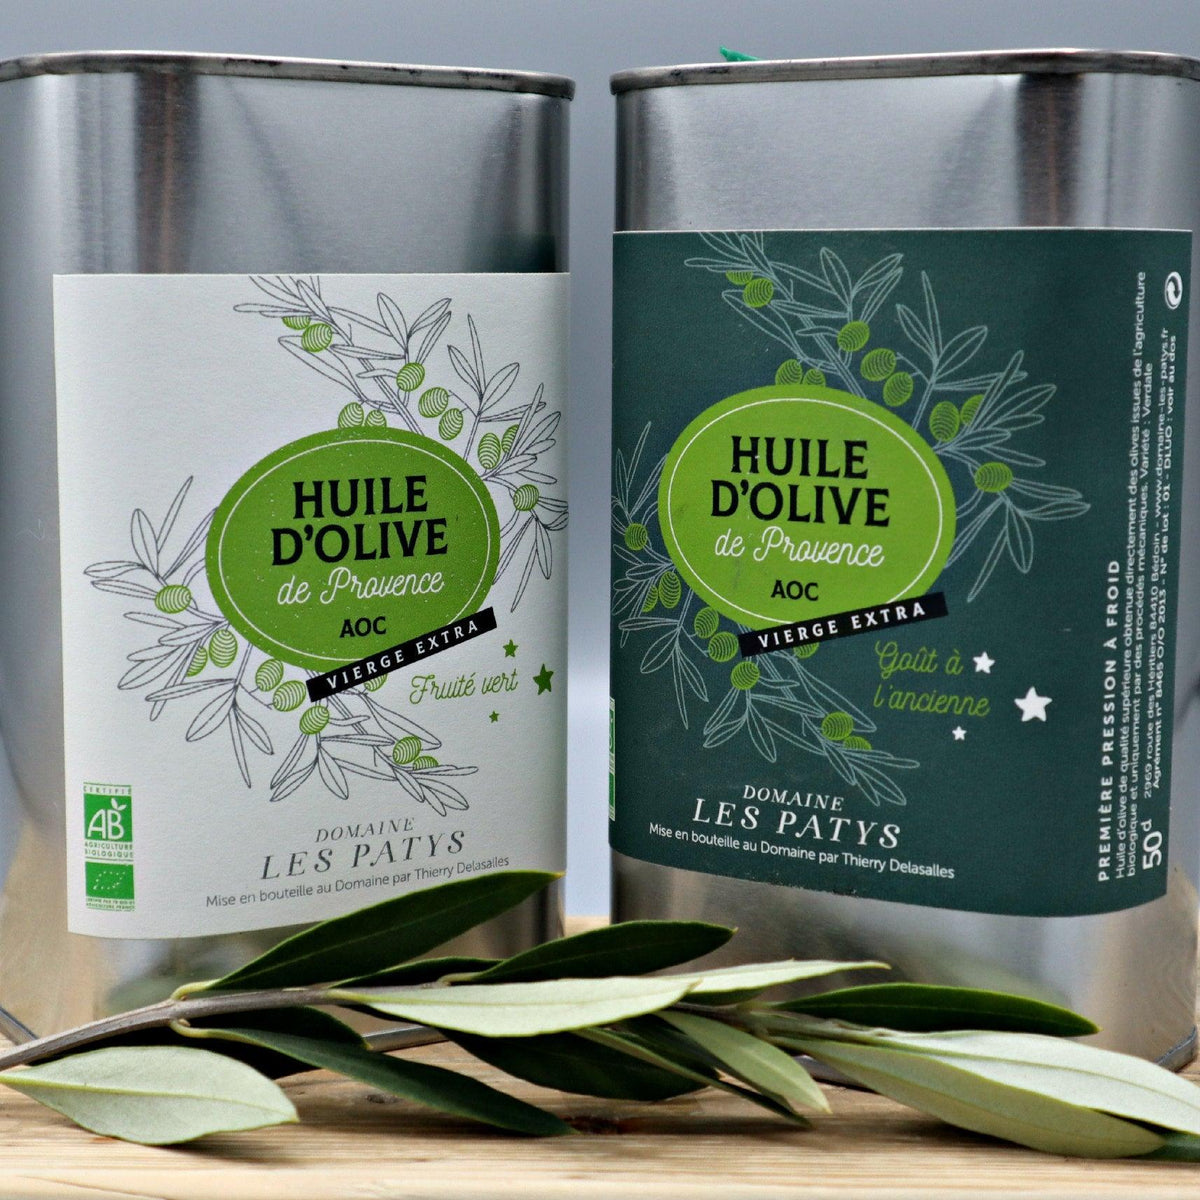 Ungefiltertes Olivenöl bio und traditionelle Herstellung in Frankreich | La Sariette Shop